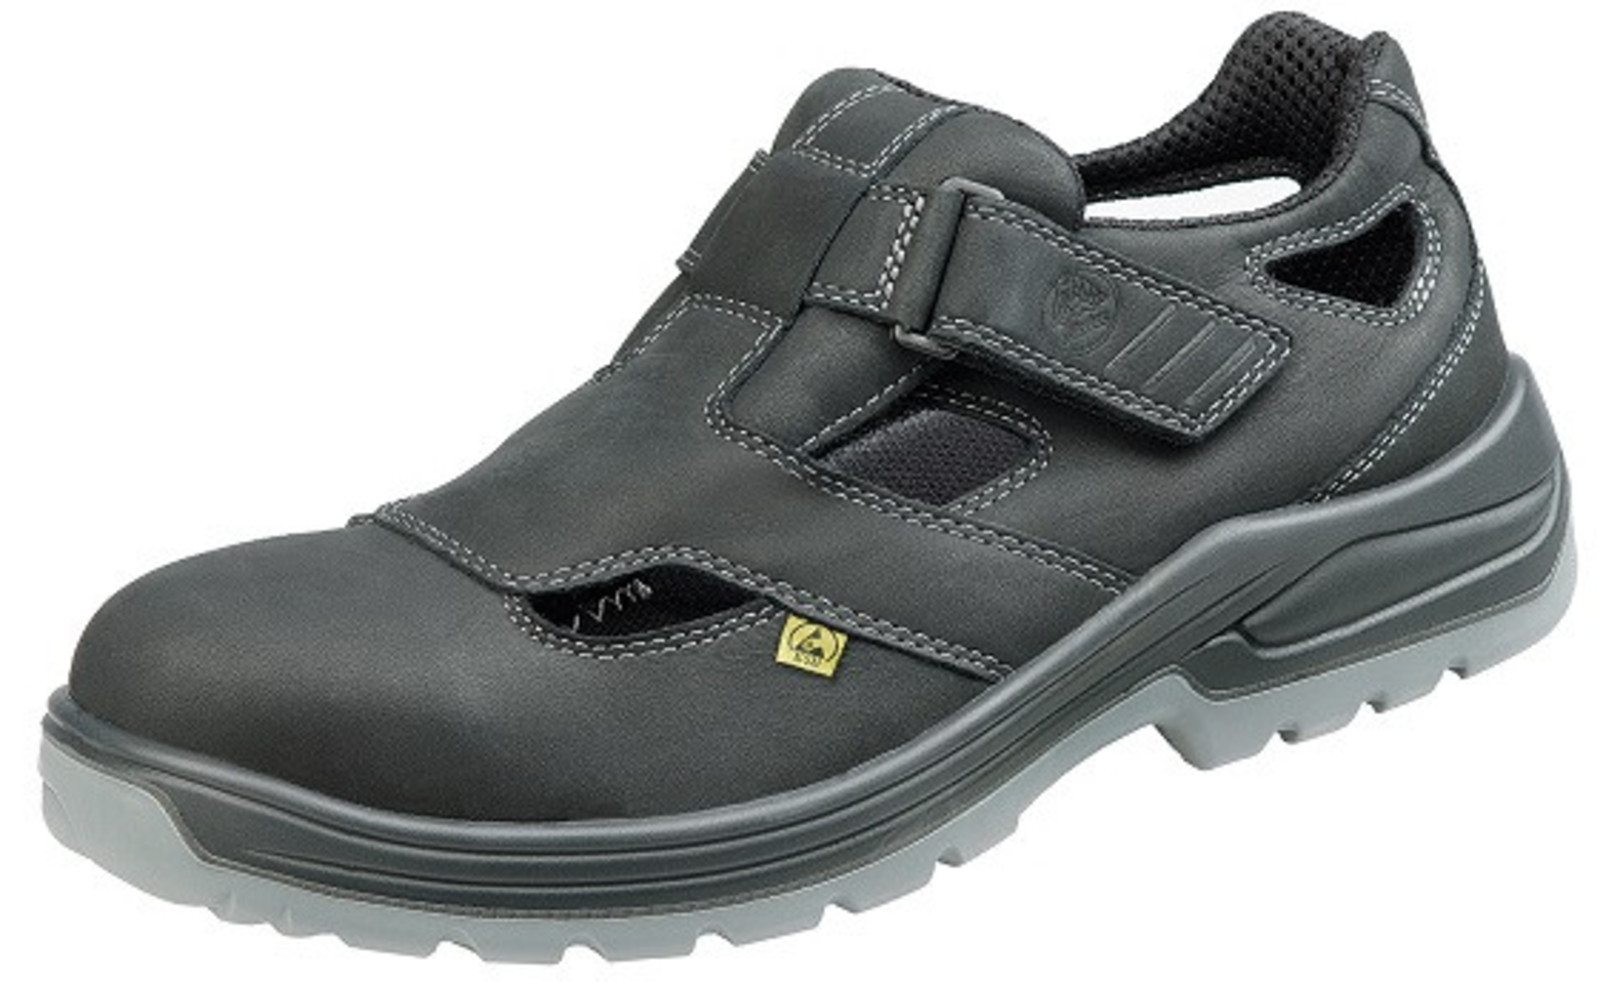 Bezpečnostné sandále Baťa Helsinki S1 - veľkosť: 47, farba: čierna